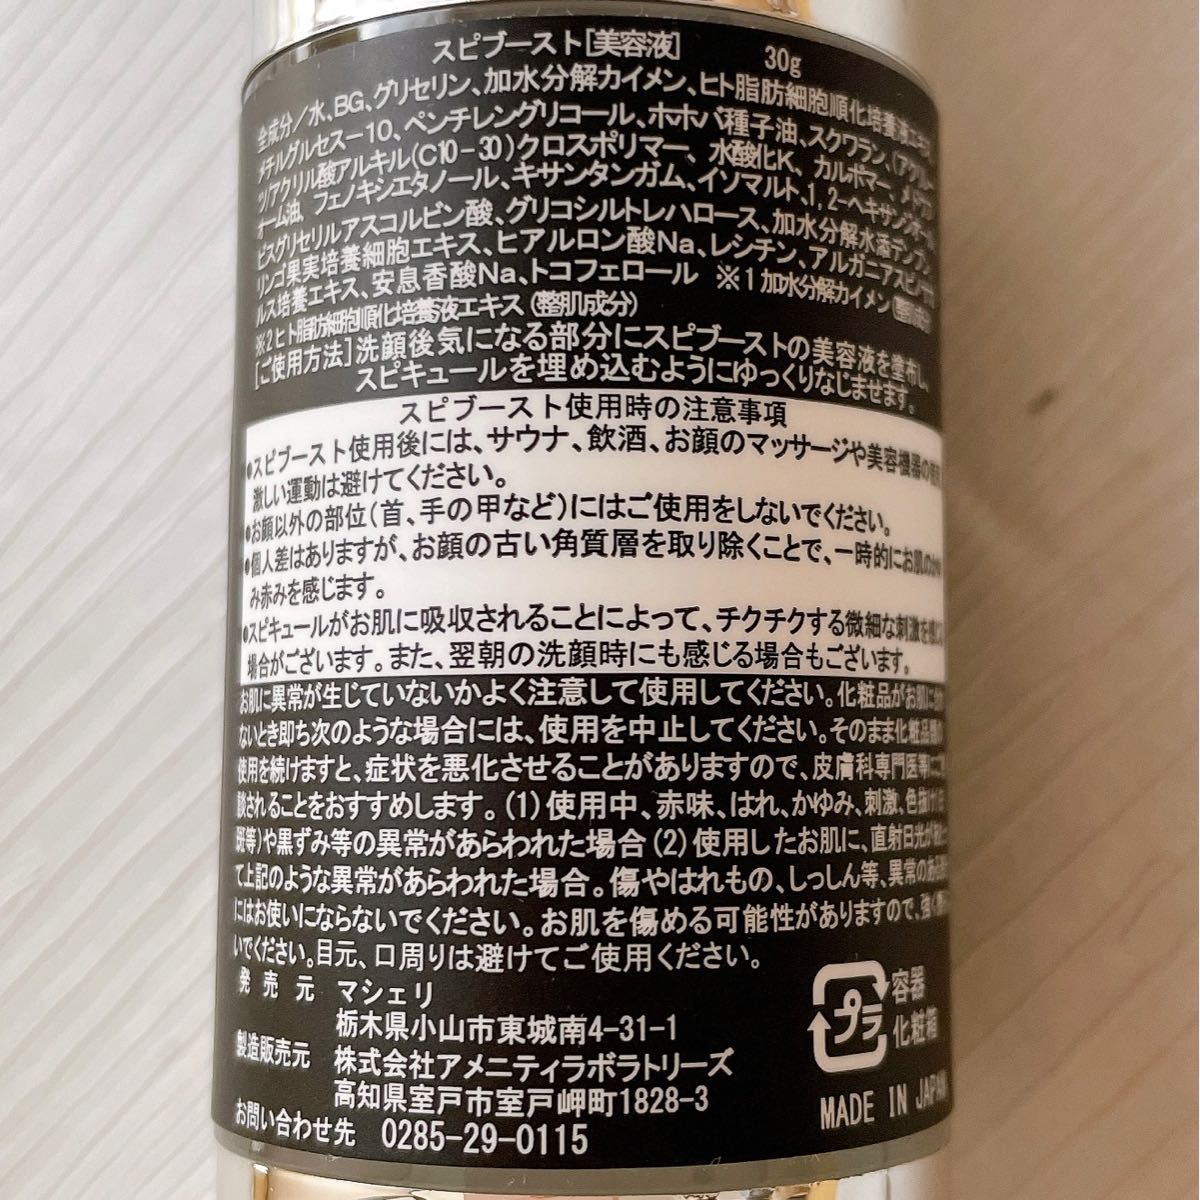 2021年秋冬新作 針美容液 日本製 スピブースト スピキュール ターンオーバー 美肌 肌悩み 5本 通販